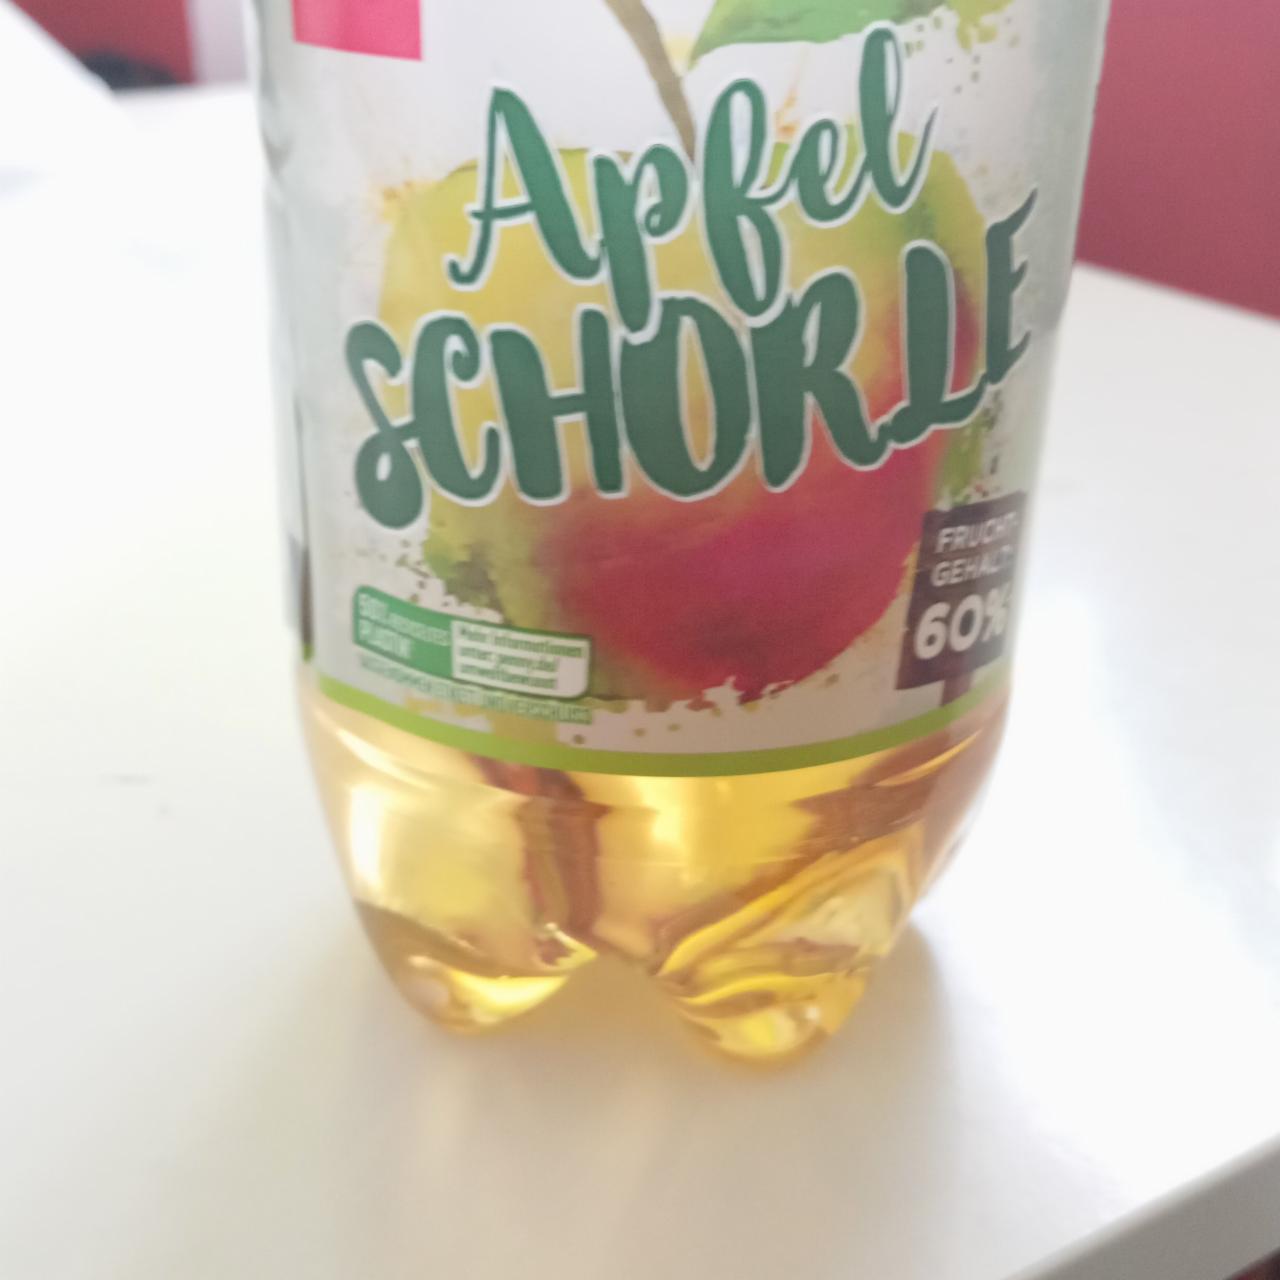 Фото - яблочный напиток apfelschors Penny